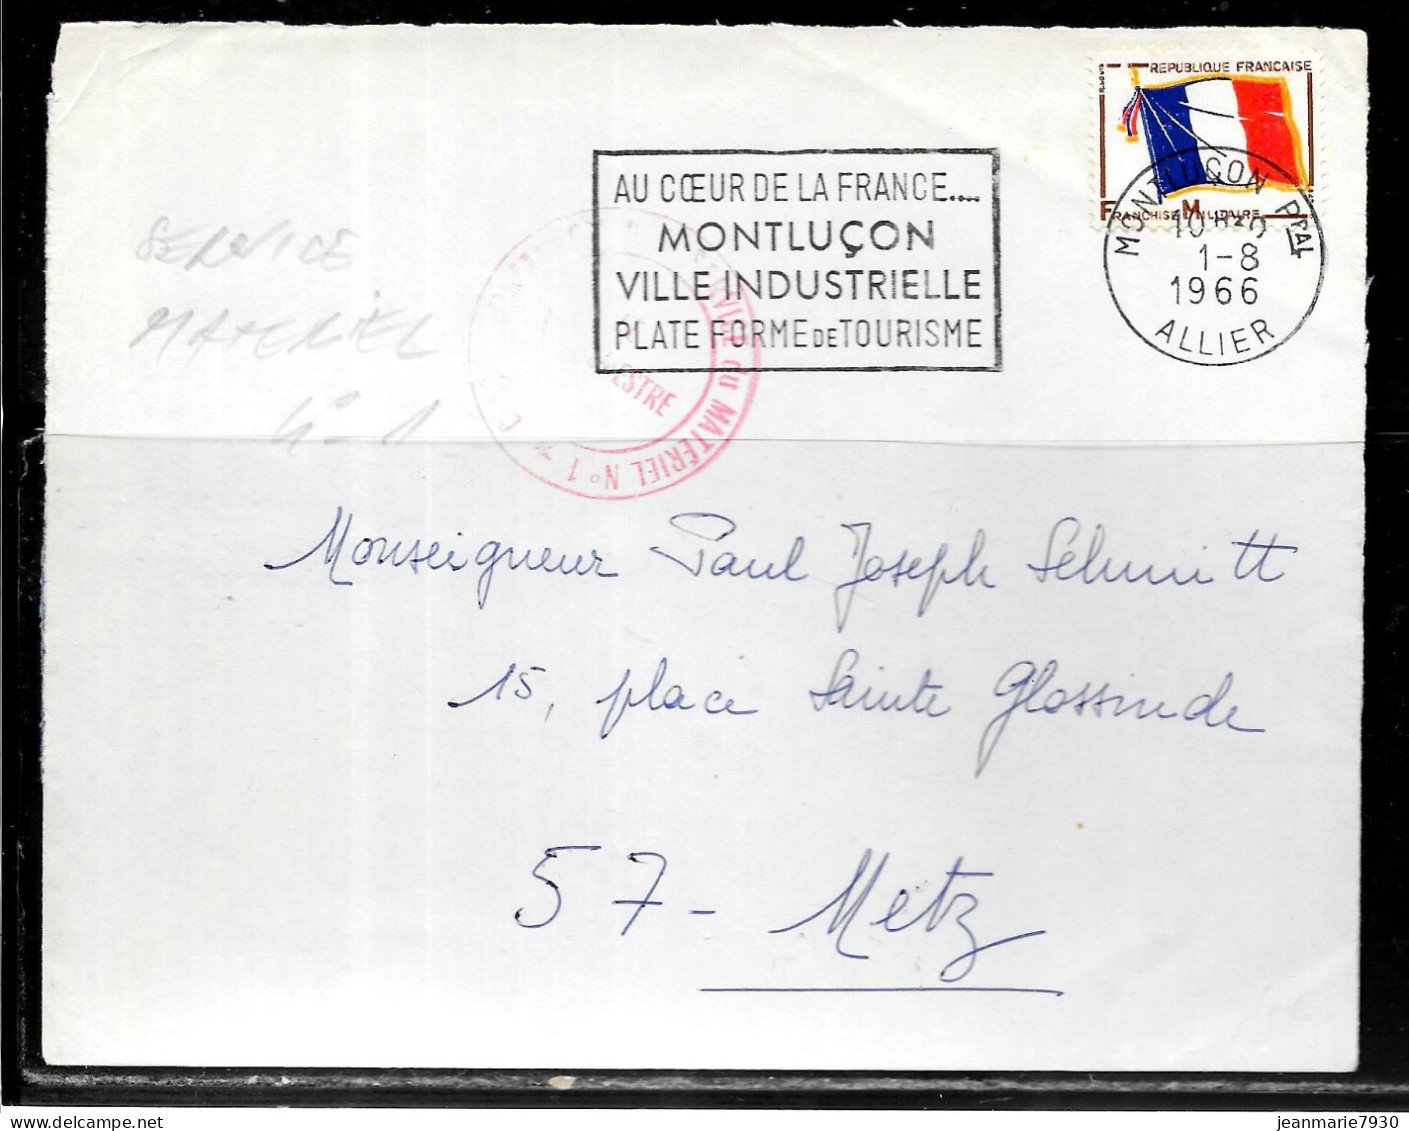 P258 - LETTRE EN FRANCHISE DE MONTLUCON DU 01/08/66 - CACHET SERVICE MATERIEL N° 1 - FLAMME - Covers & Documents